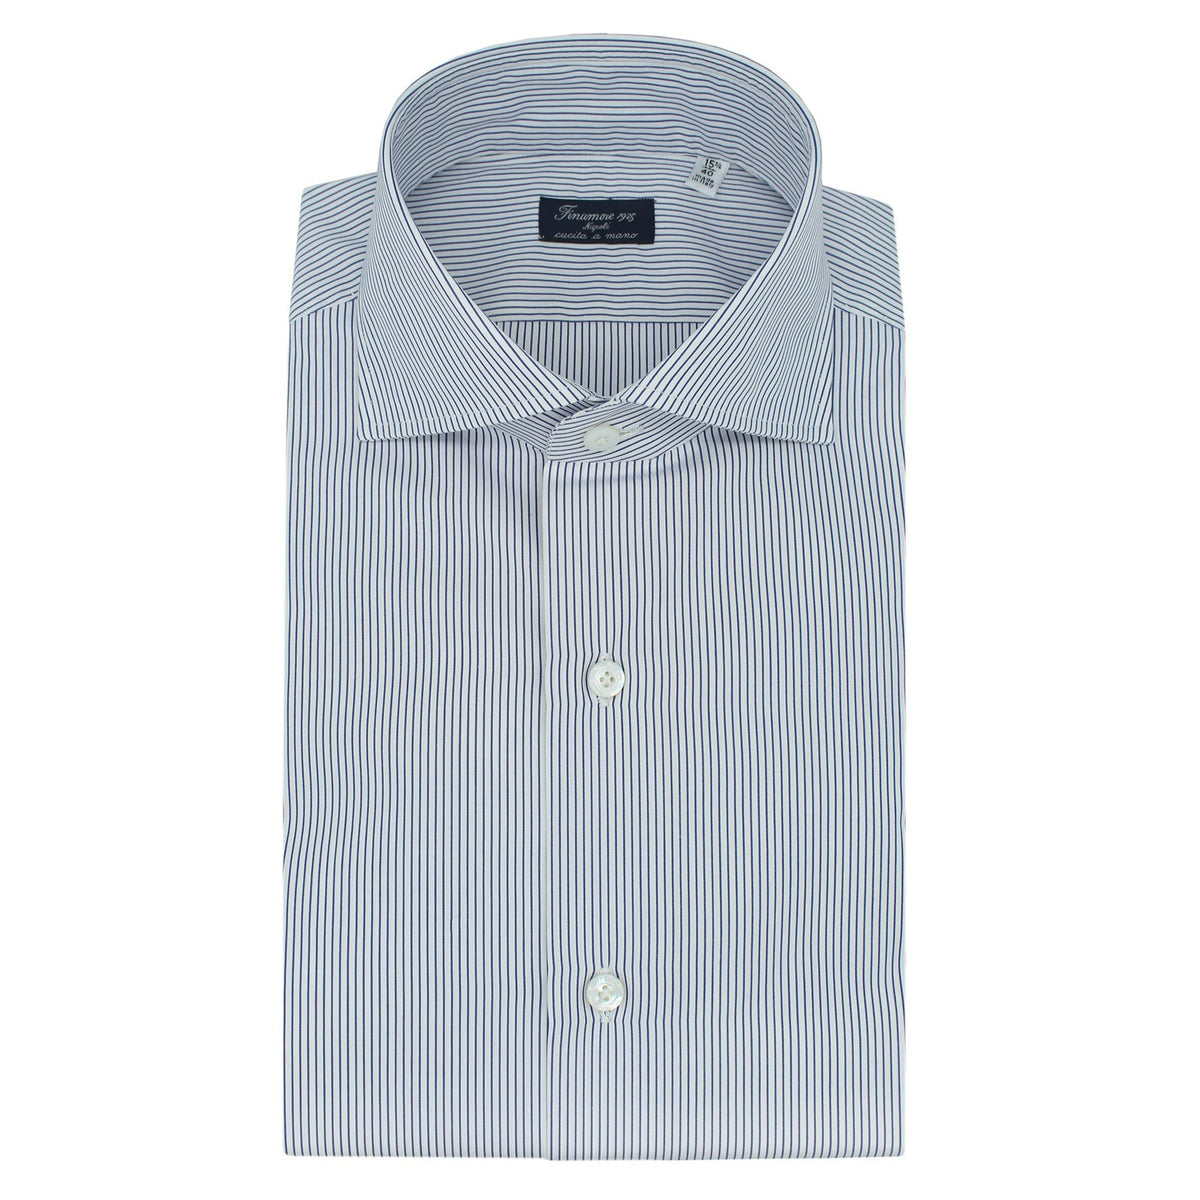 Classic fit shirt Napoli in cotton white bottom micro stripe blu